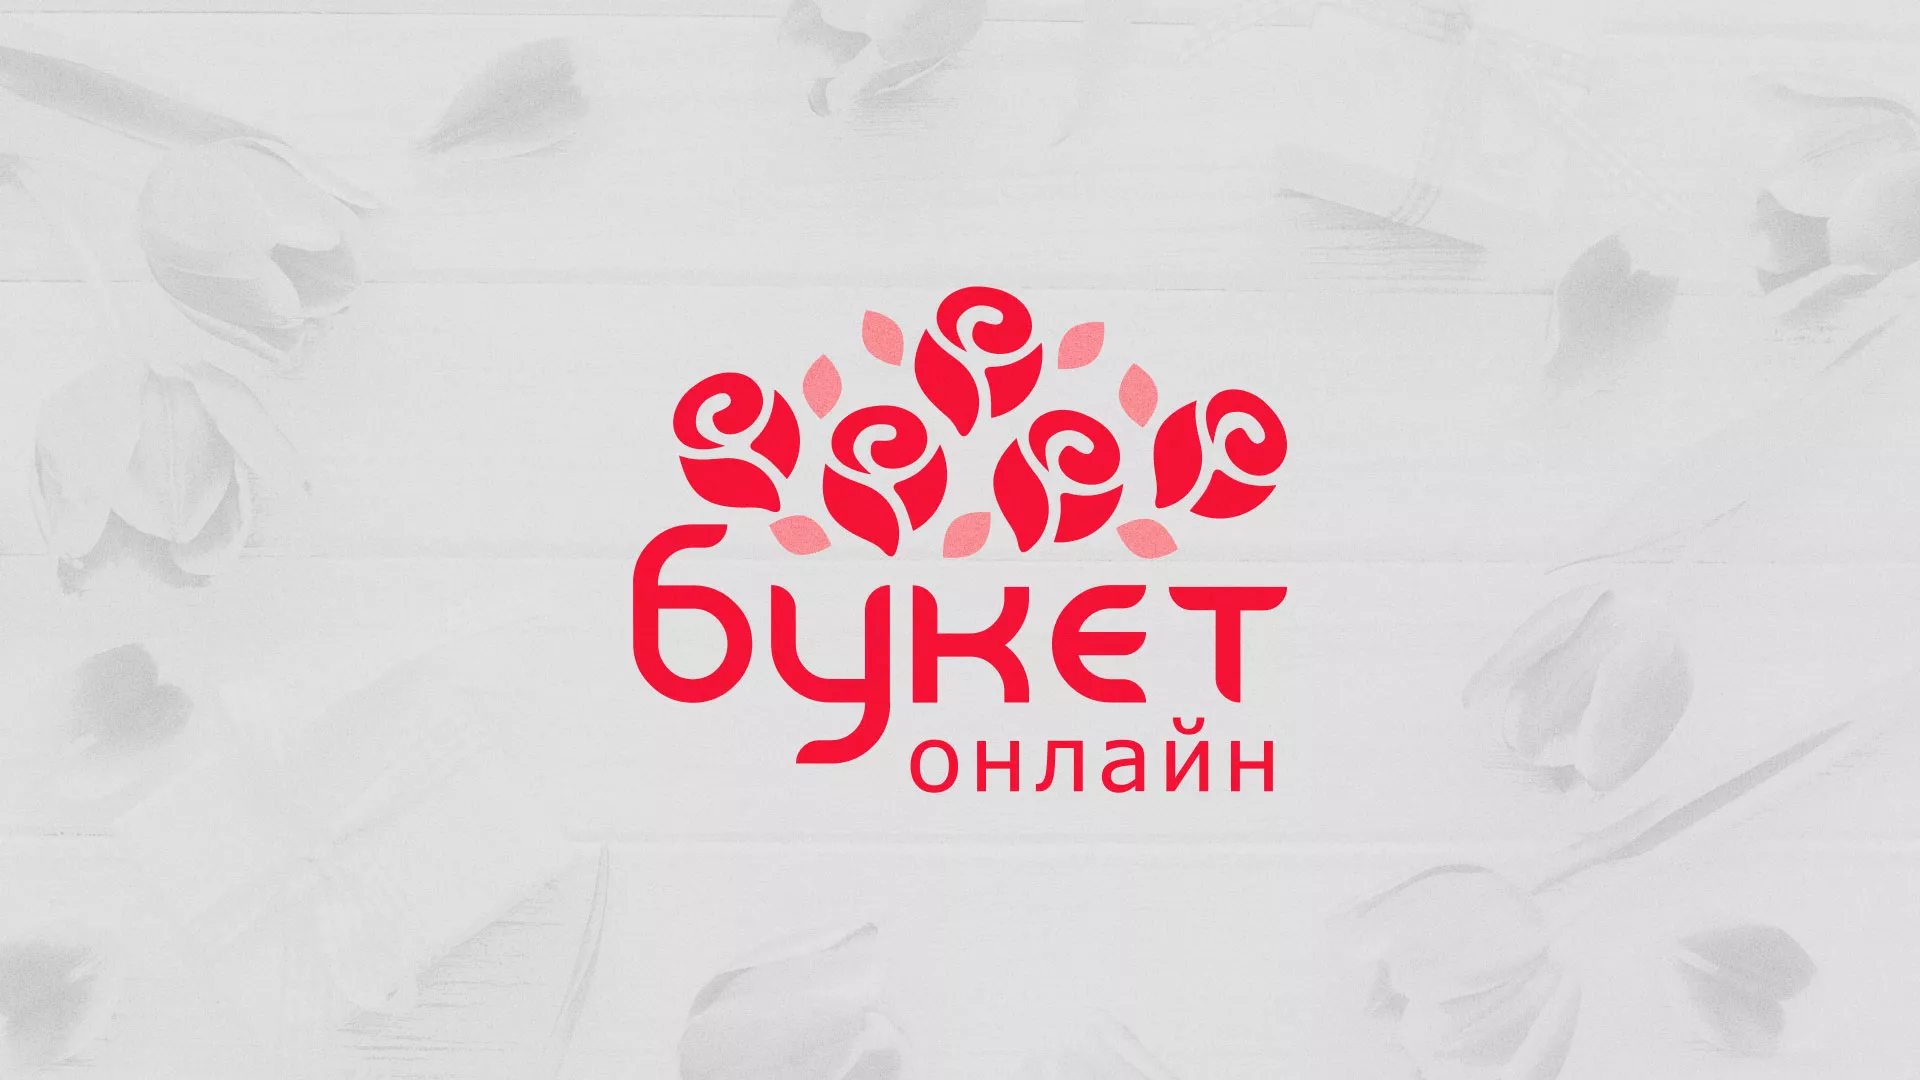 Создание интернет-магазина «Букет-онлайн» по цветам в Закаменске